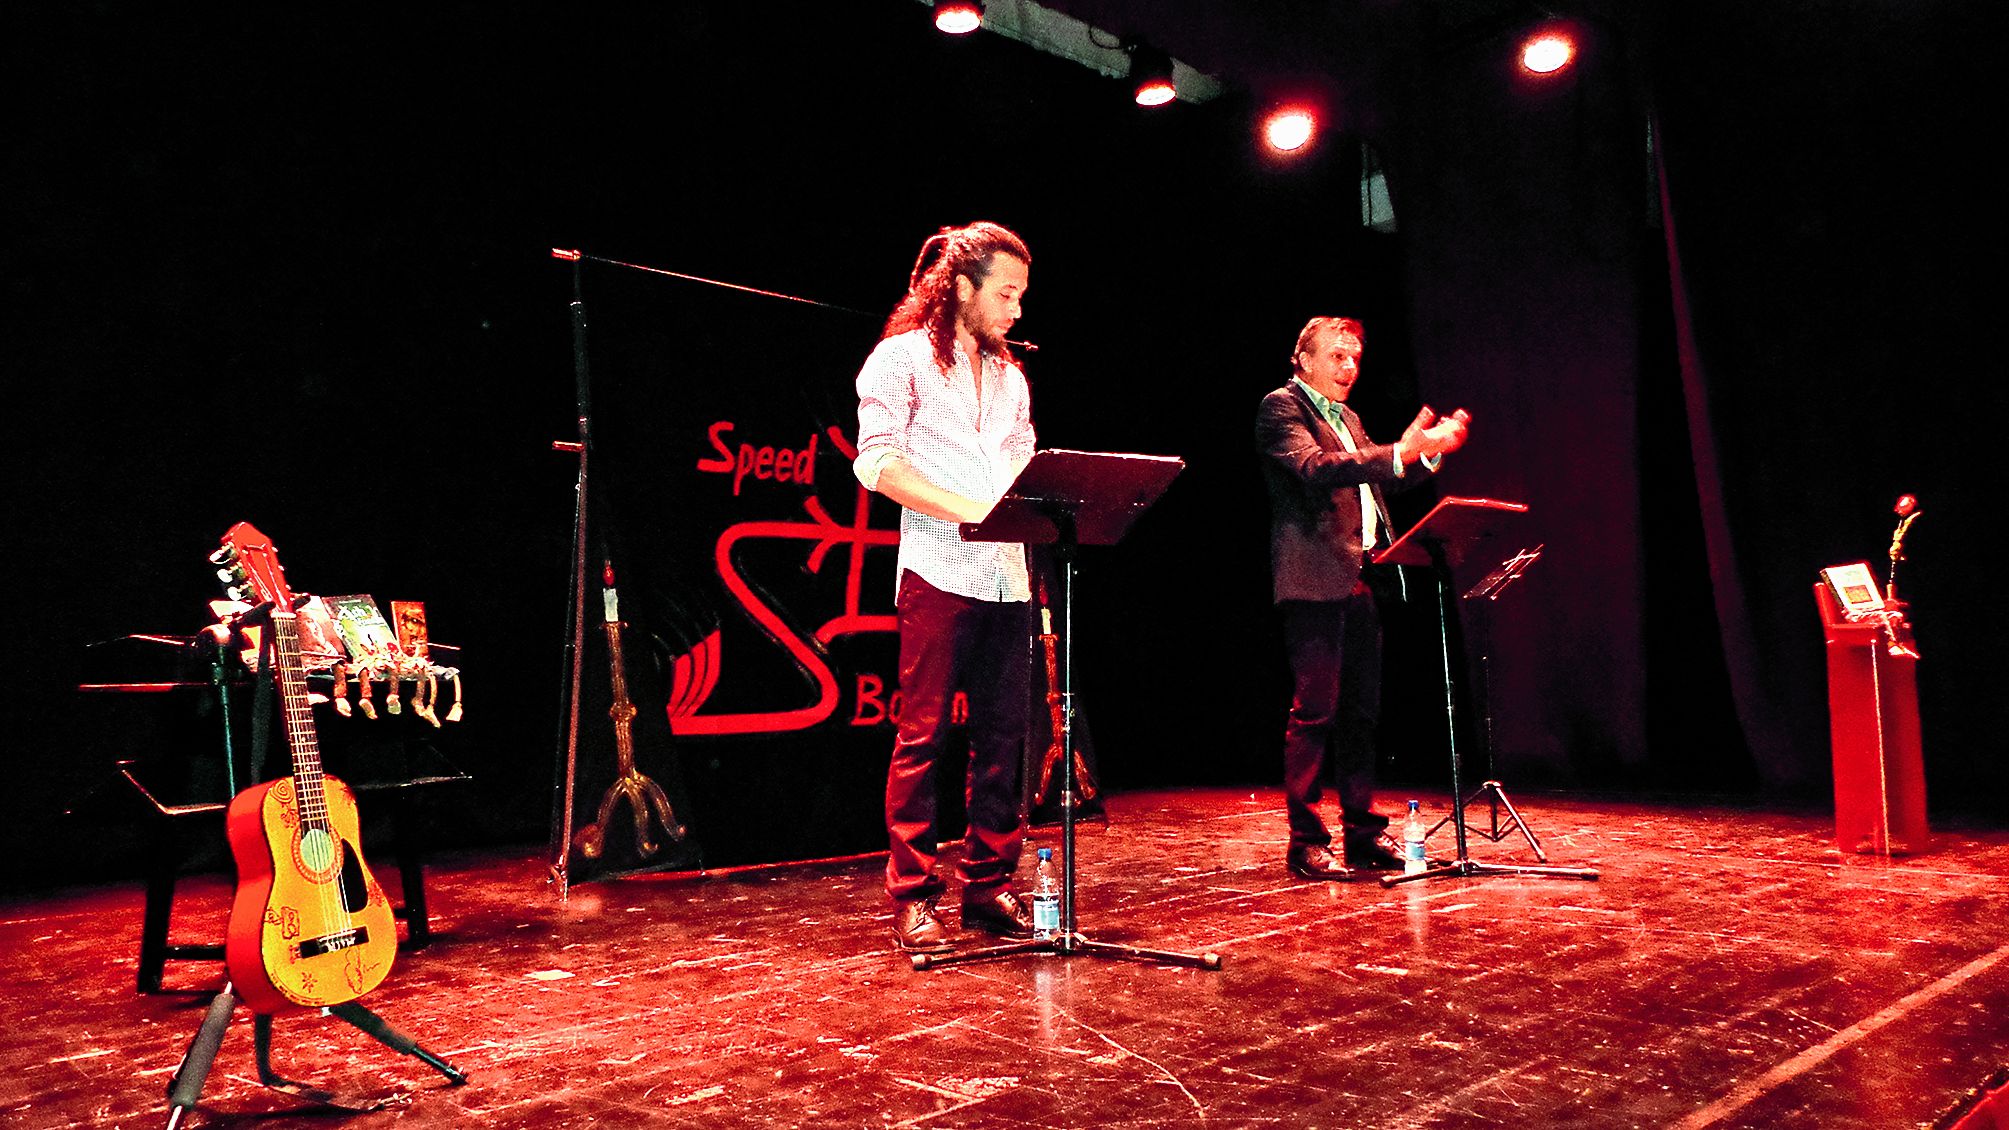 Plusieurs spectacles ont animé le festival, dont celui de la Compagnie  Les Artgonautes  du Pacifique intitulé Speed bouquin, présenté  par les comédiens Sylvain Cormier et Erwan Botrel.